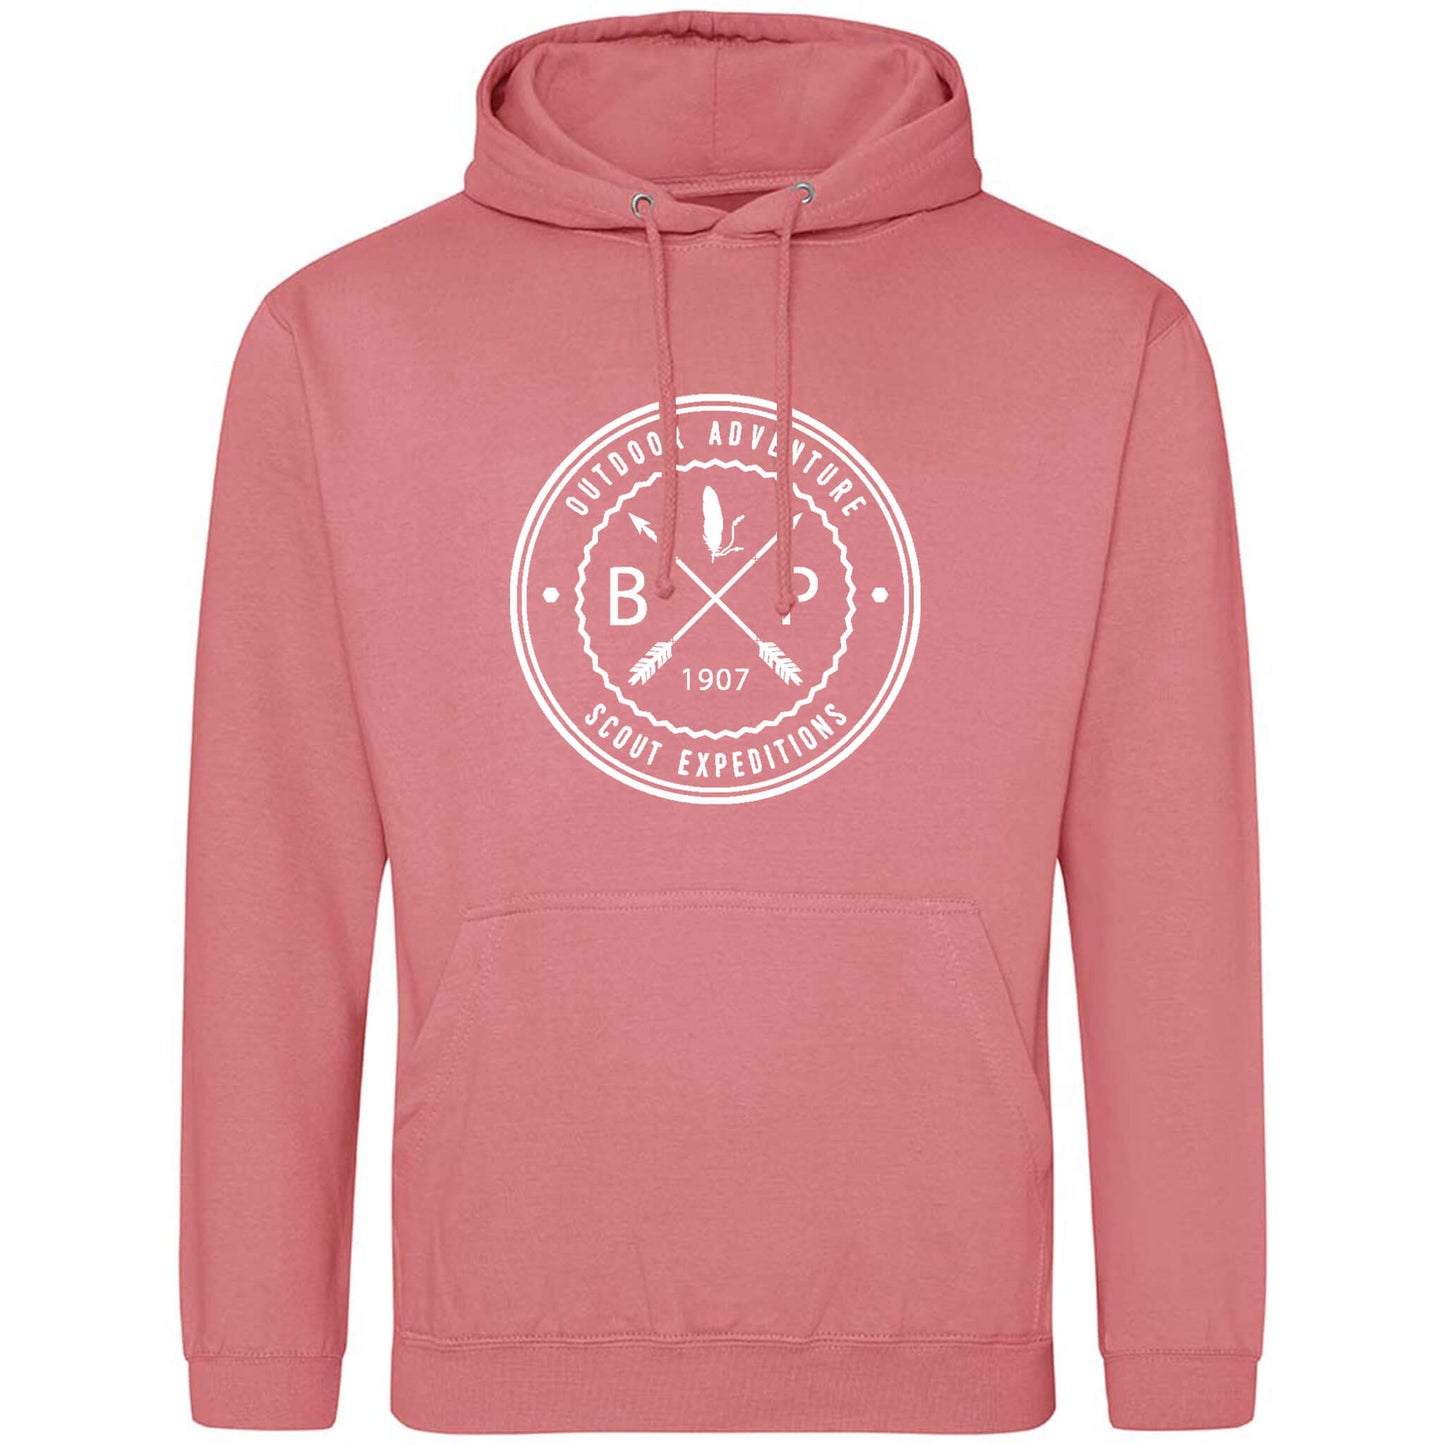 BP since 1907 hoodie pink